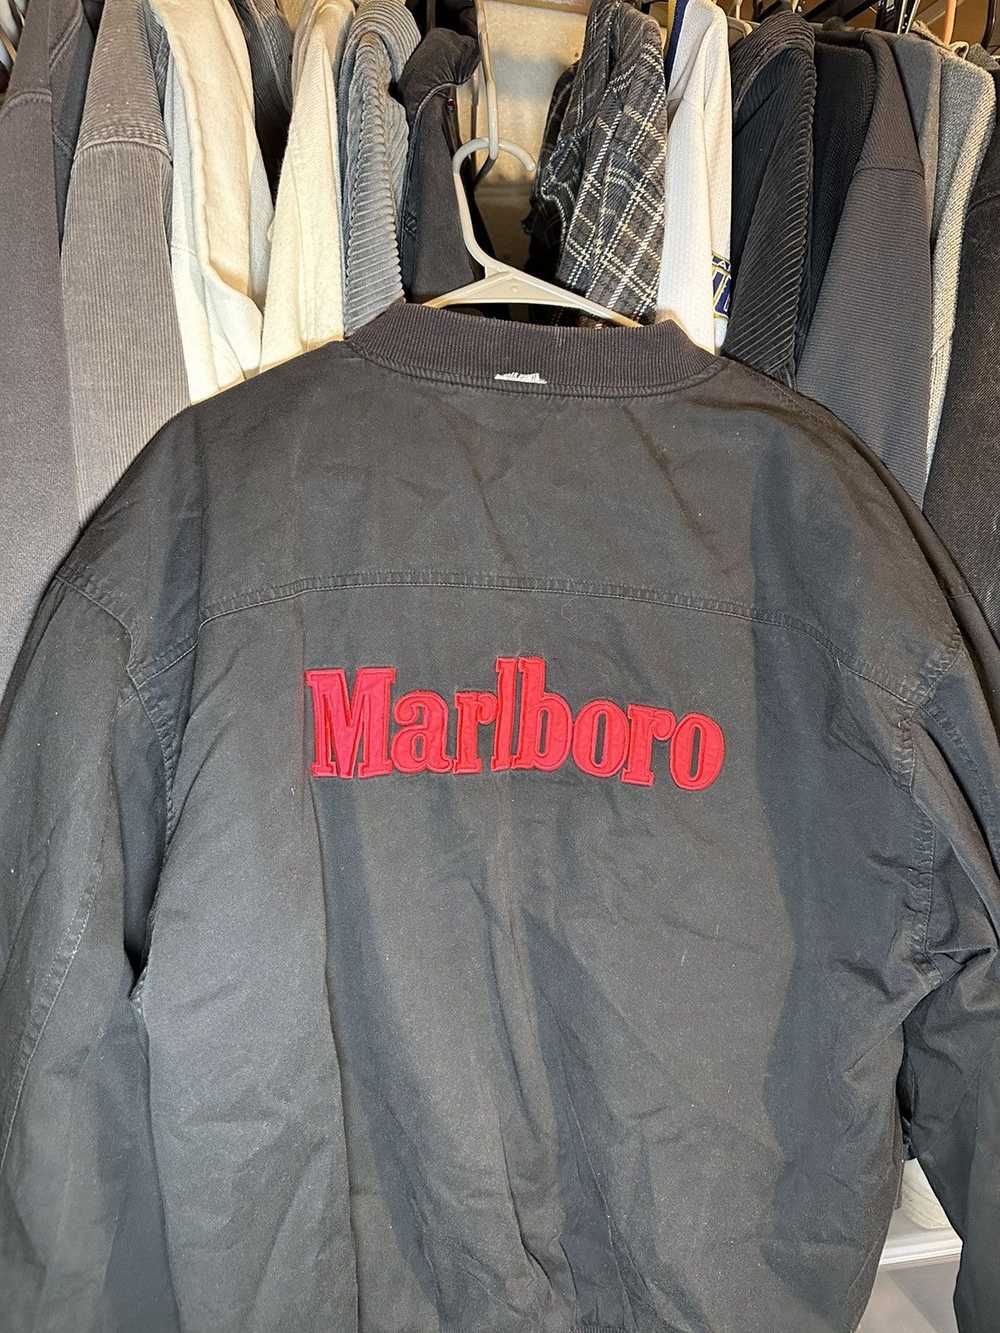 Marlboro × Streetwear × Vintage Vintage Marlboro … - image 4